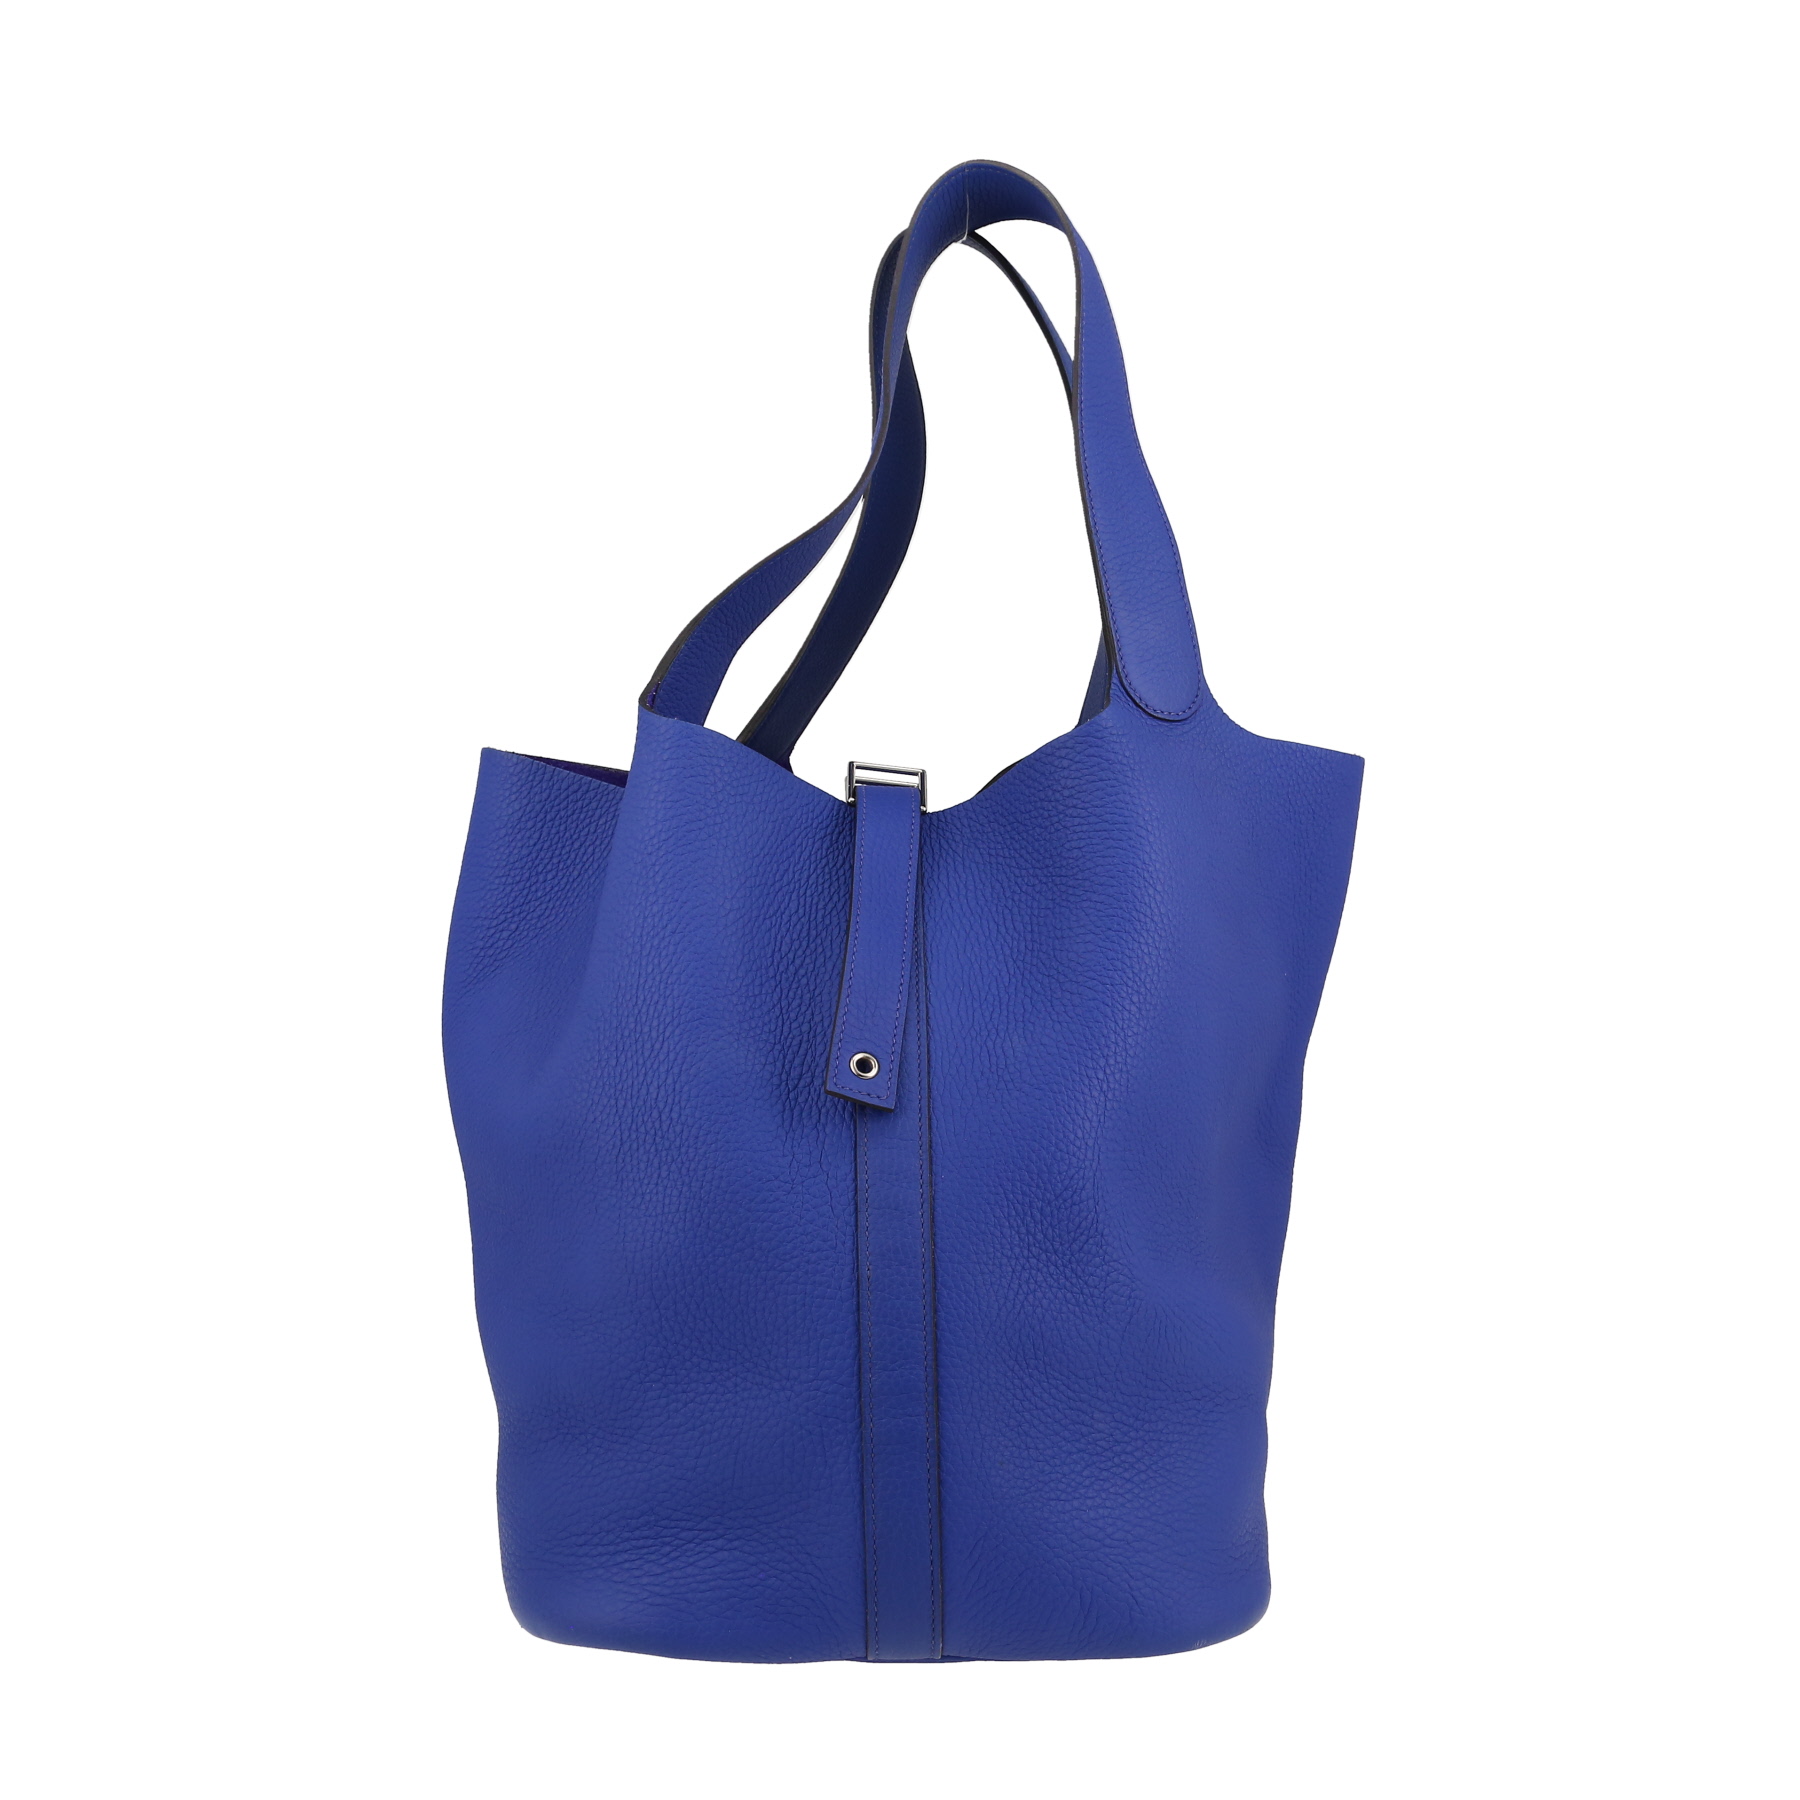 Picotin Large Model Handbag In Blue Togo Leather